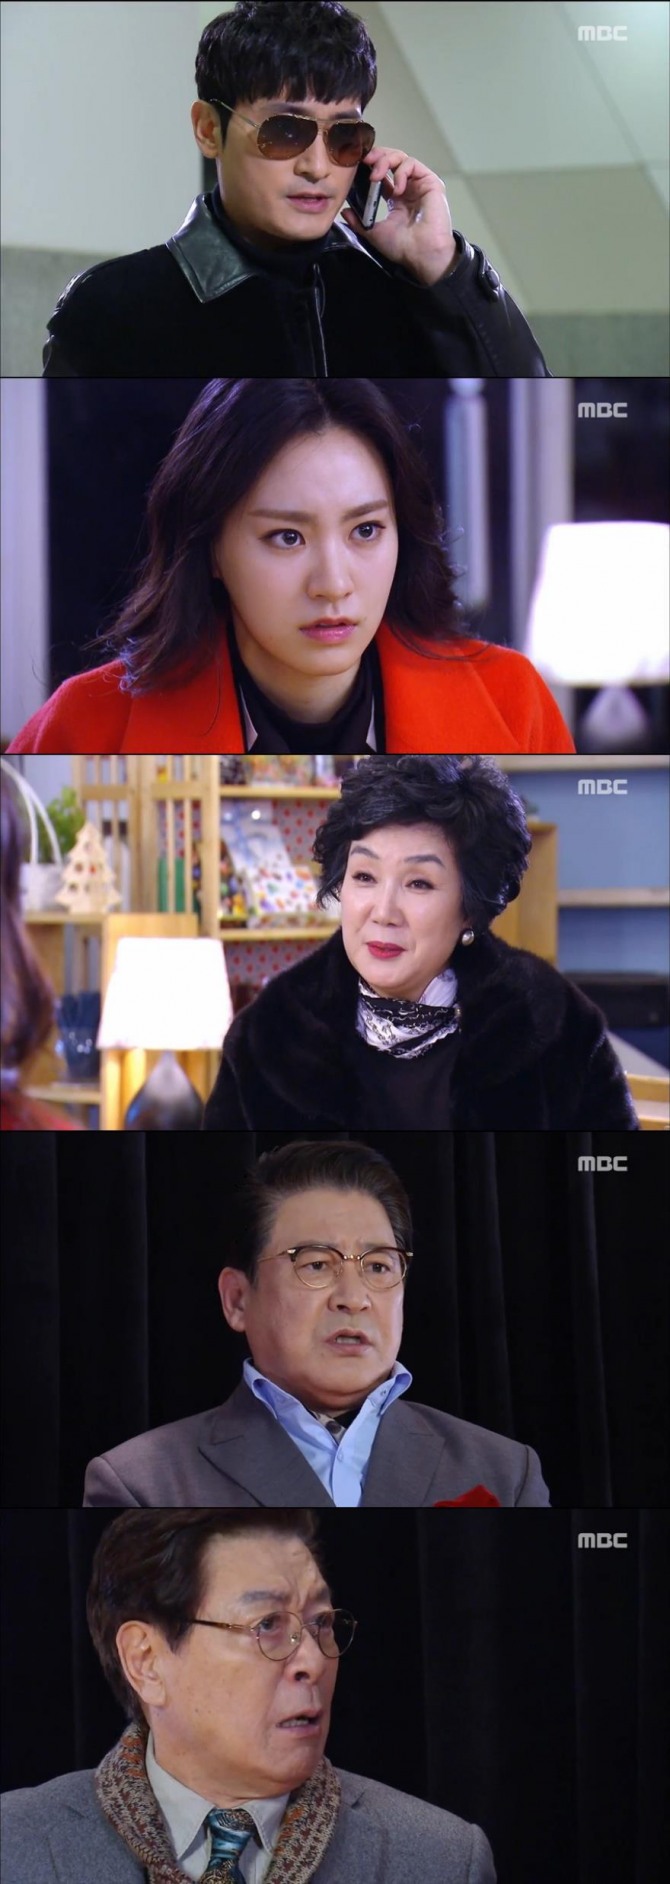 2일 방송된 MBC 아침드라마 '언제나 봄날'에서 보현(이유주) 친부 민수가 귀국하는 반전이 그려졌다./사진=MBC 방송 캡처